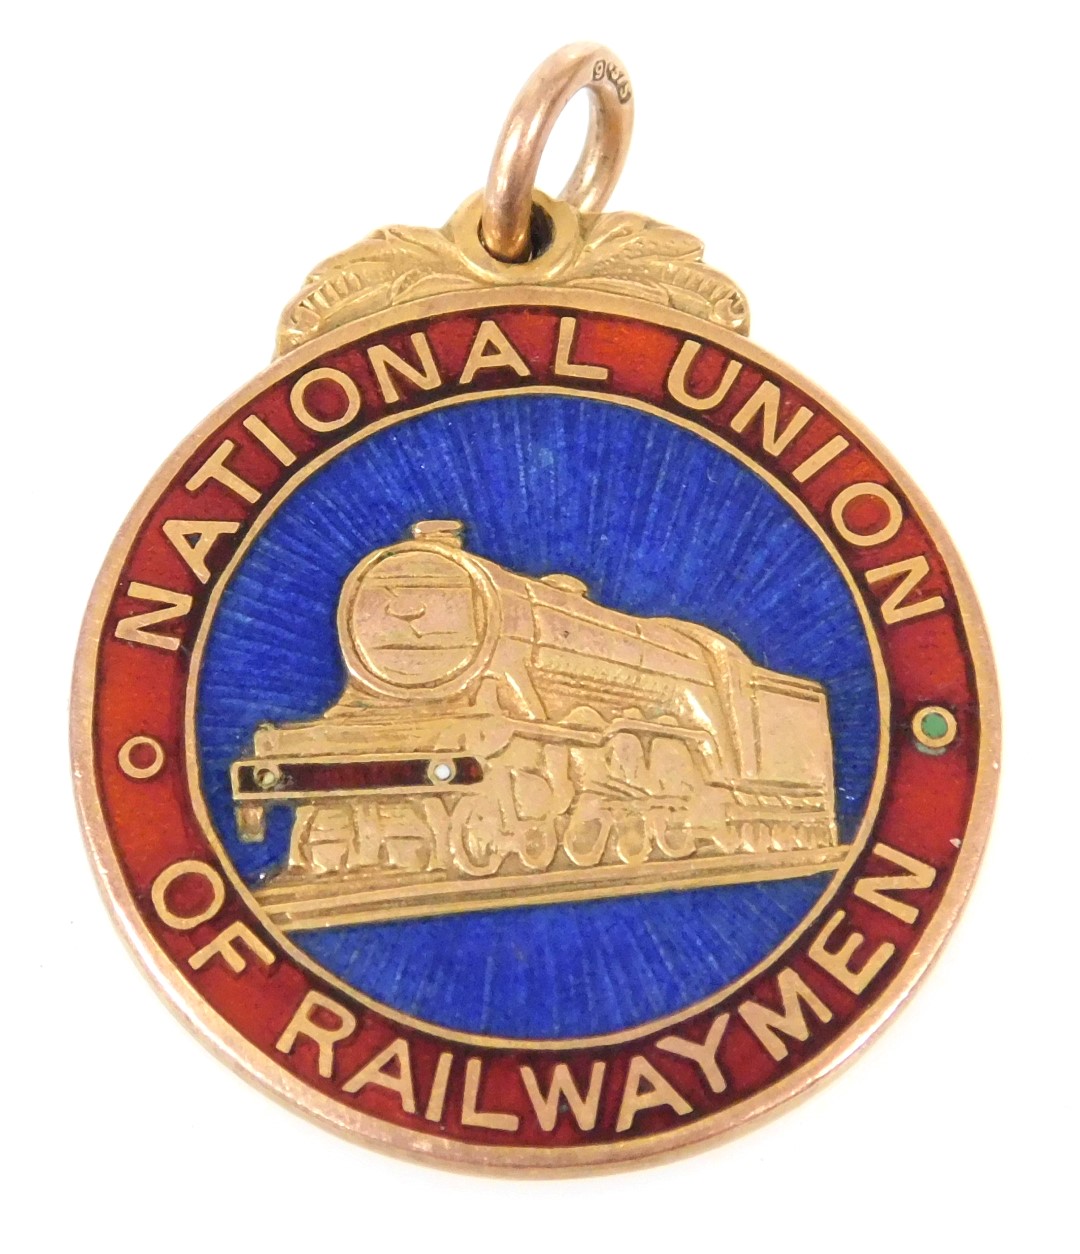 A 9ct gold enamel National Union of Railway men medallion, presentation engraved to Bro. E. Thomas,